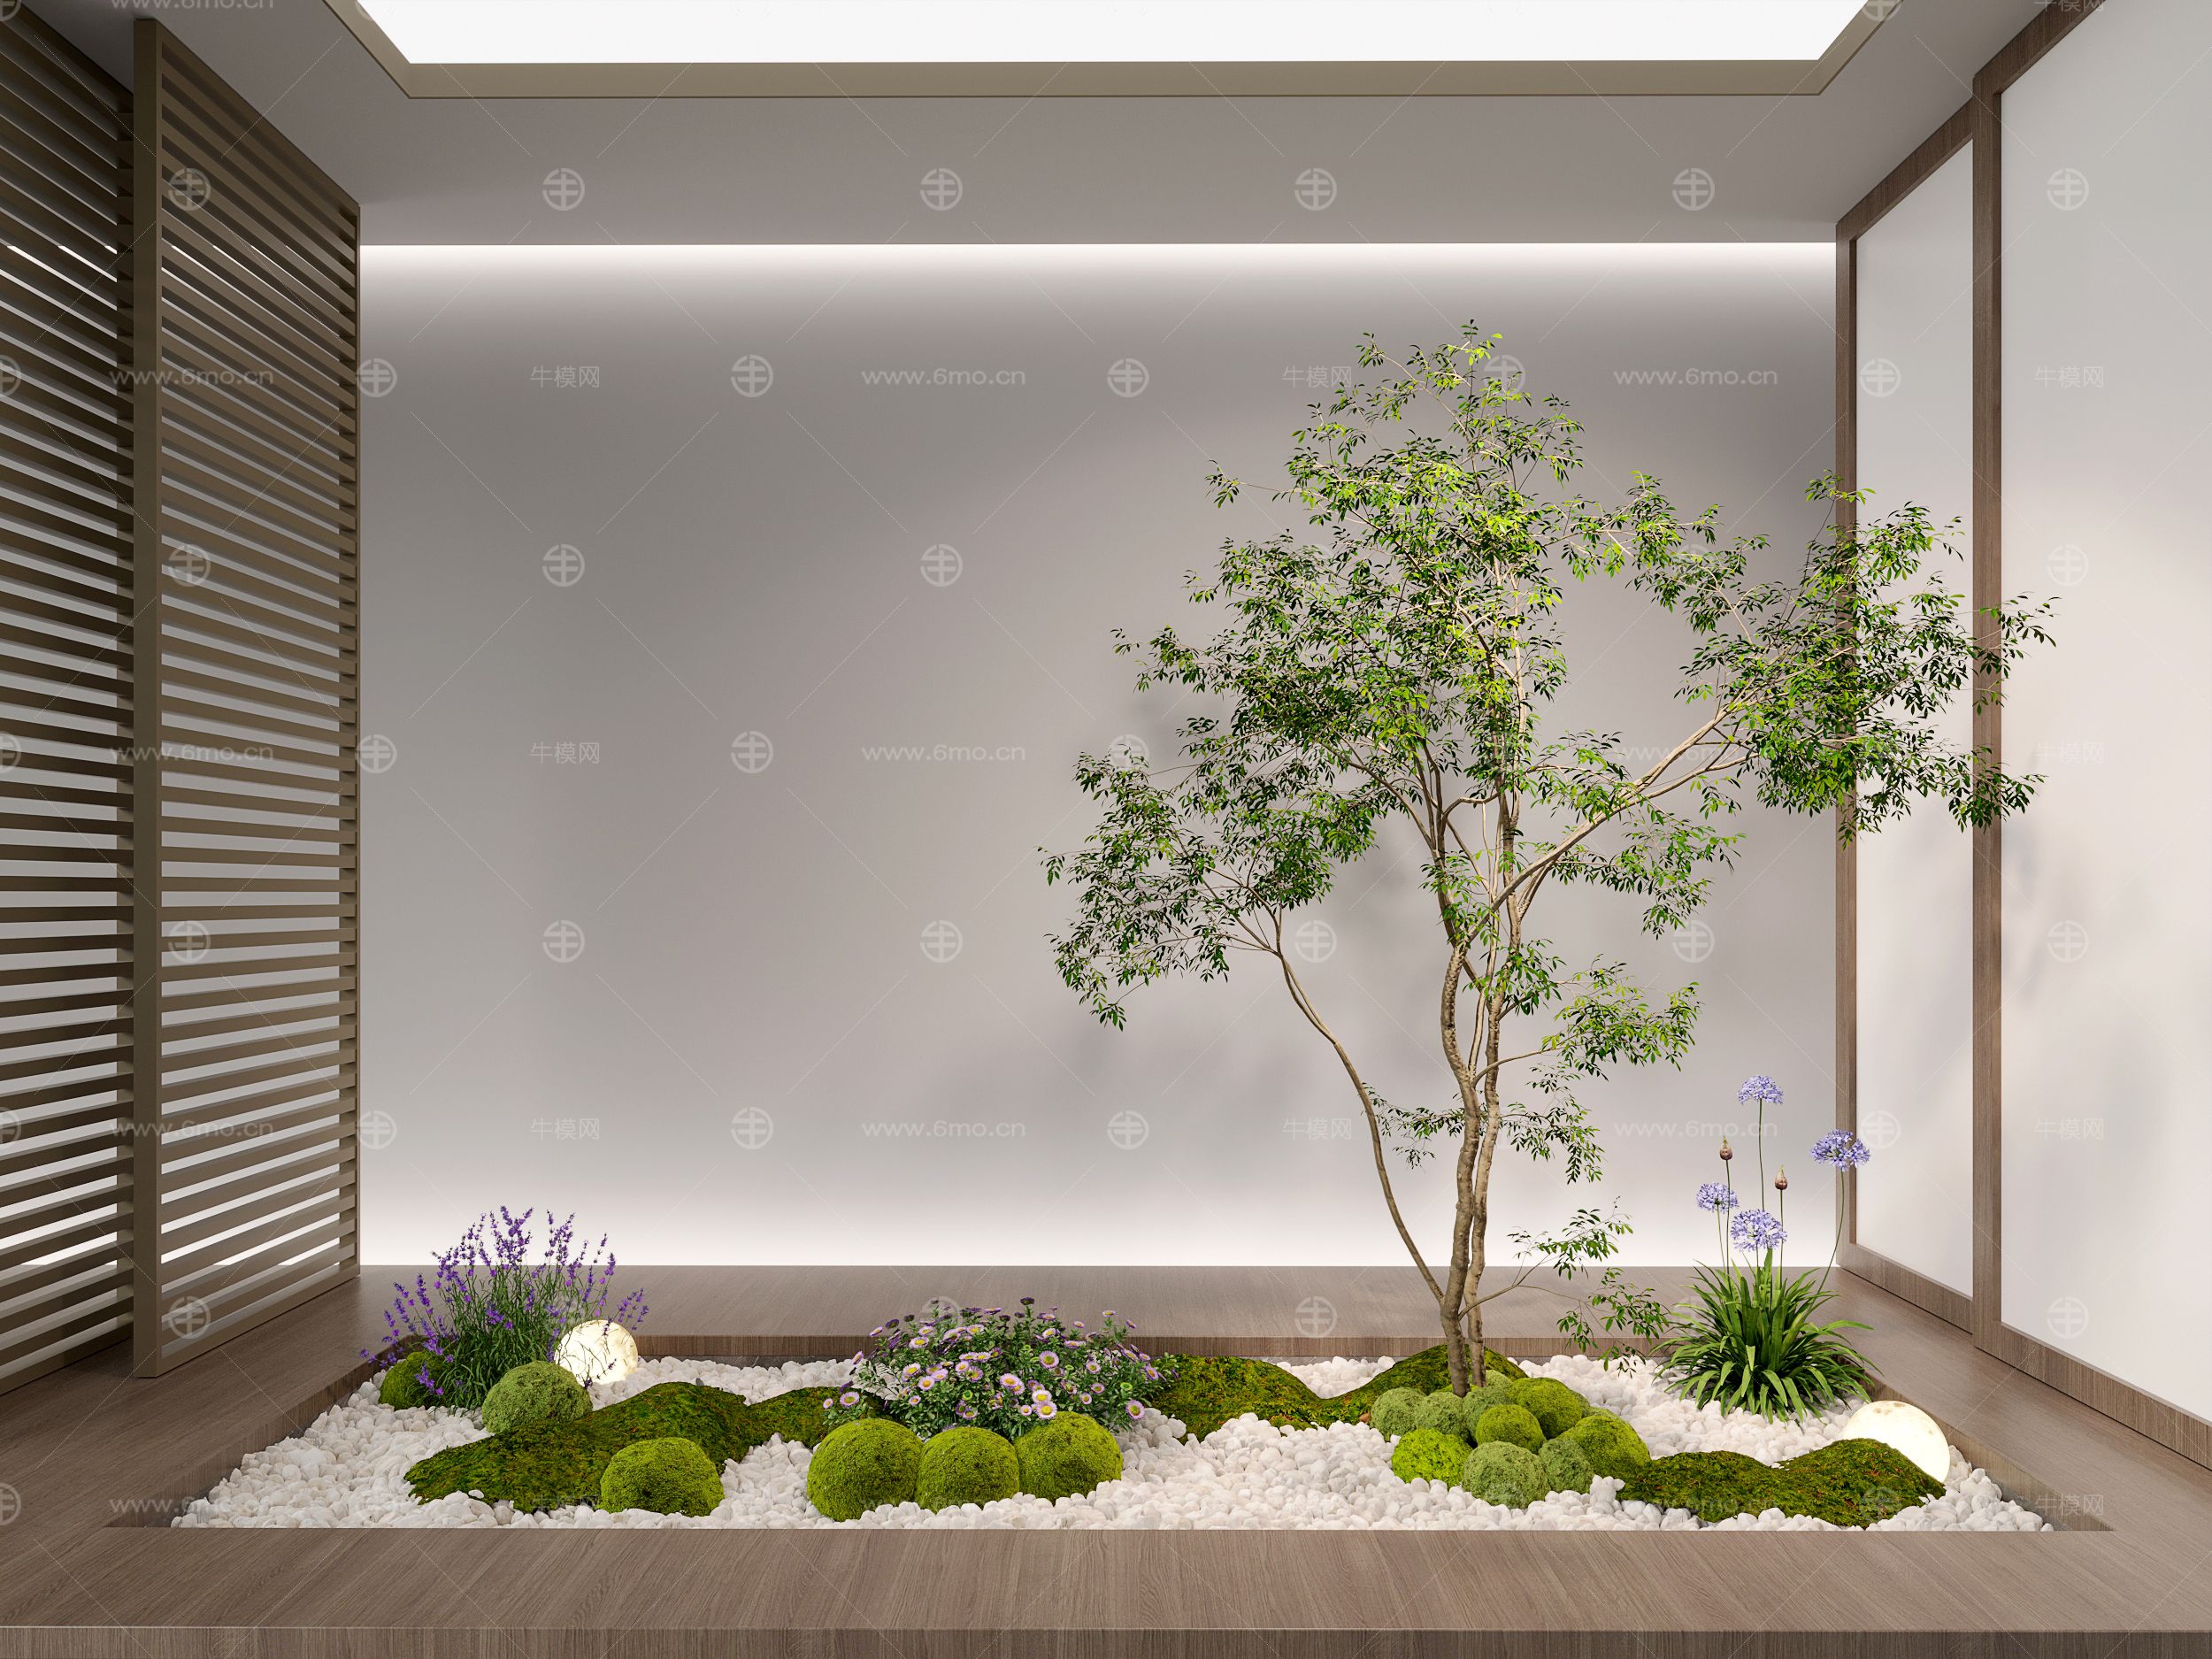 3d现代室内组团小景模型  现代植物堆 球形灌木 苔藓球  带花灌木植物组合-vr